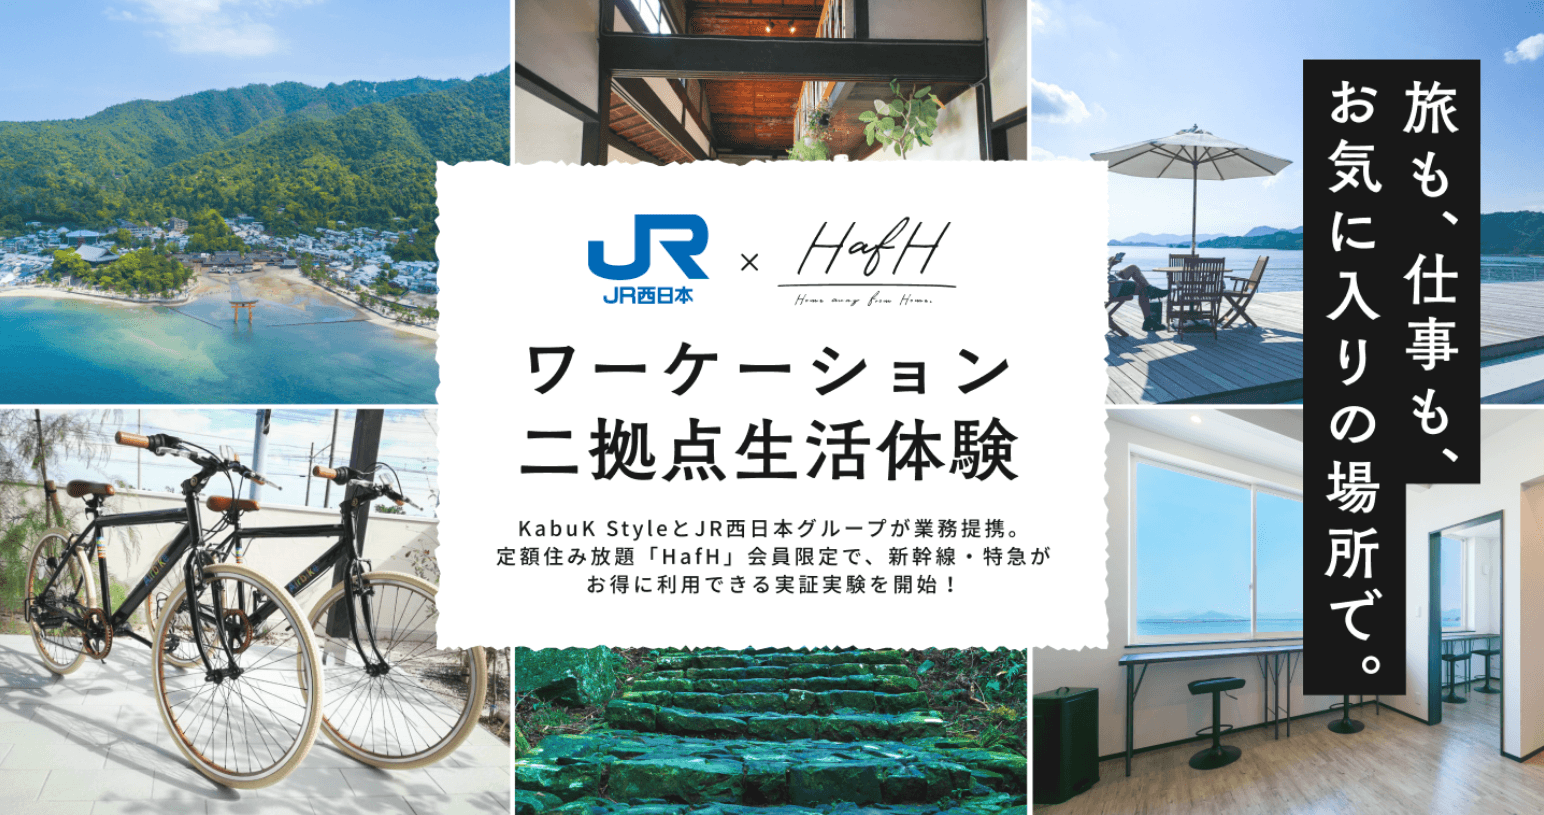 JR西日本グループと業務提携。HafH会員なら新幹線(大阪または福岡から広島へ月２往復20,000円)、一部区間乗り放題などお得に利用できる実証実験を開始！7月6日 (月)より参加者を募集